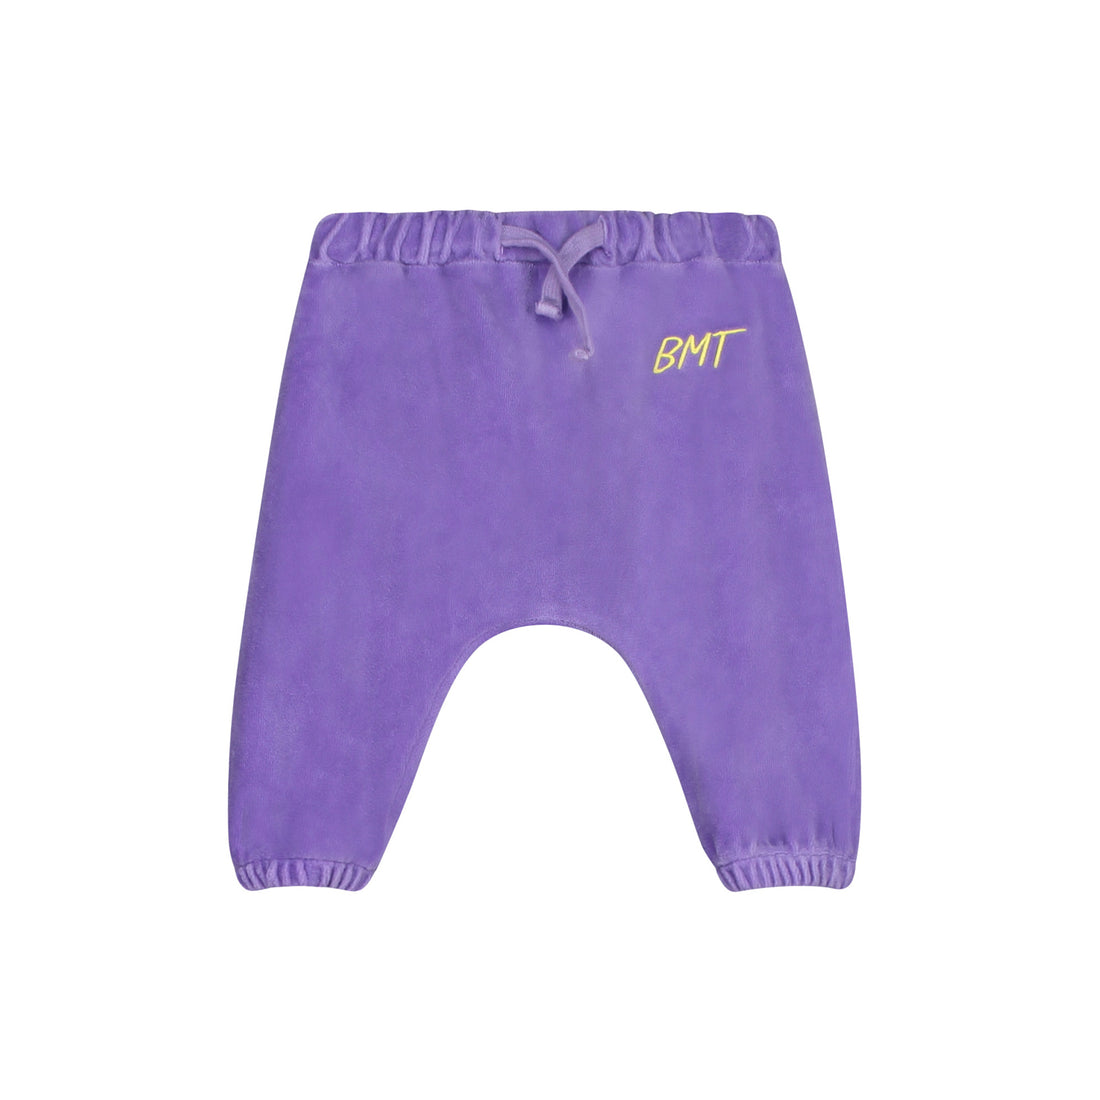 Bonmot - velvet trousers - lilac